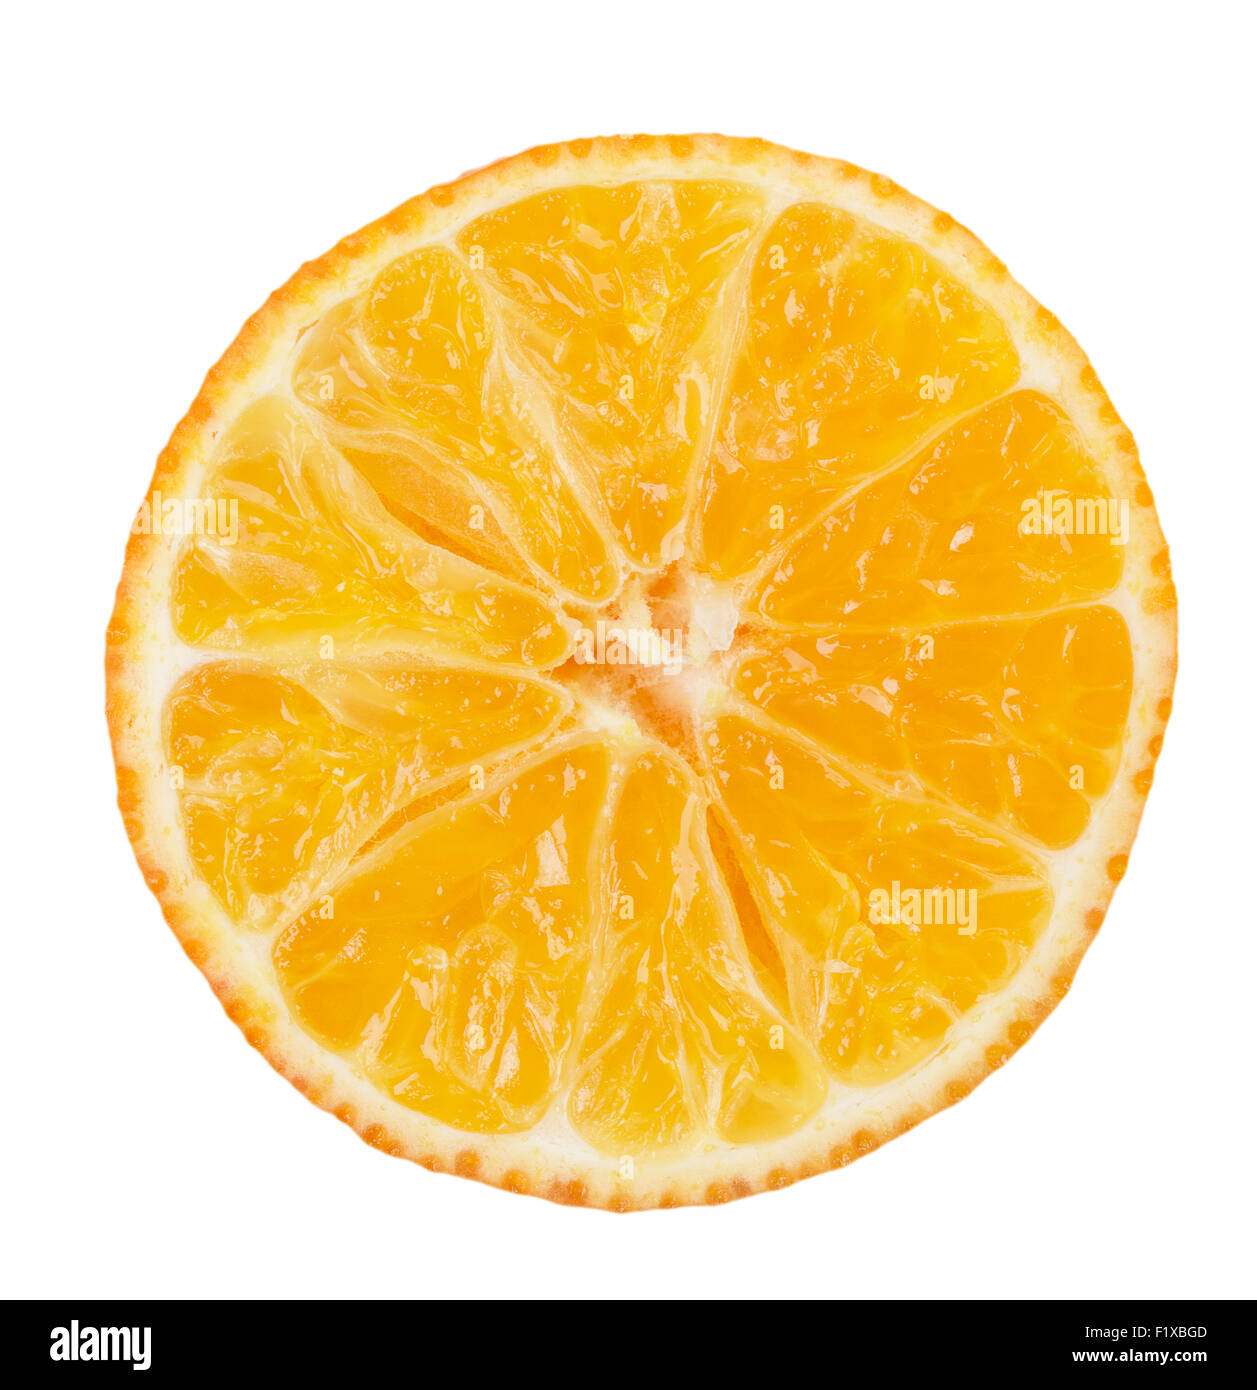 fresh orange mandarins isolated on a white background. Stock Photo